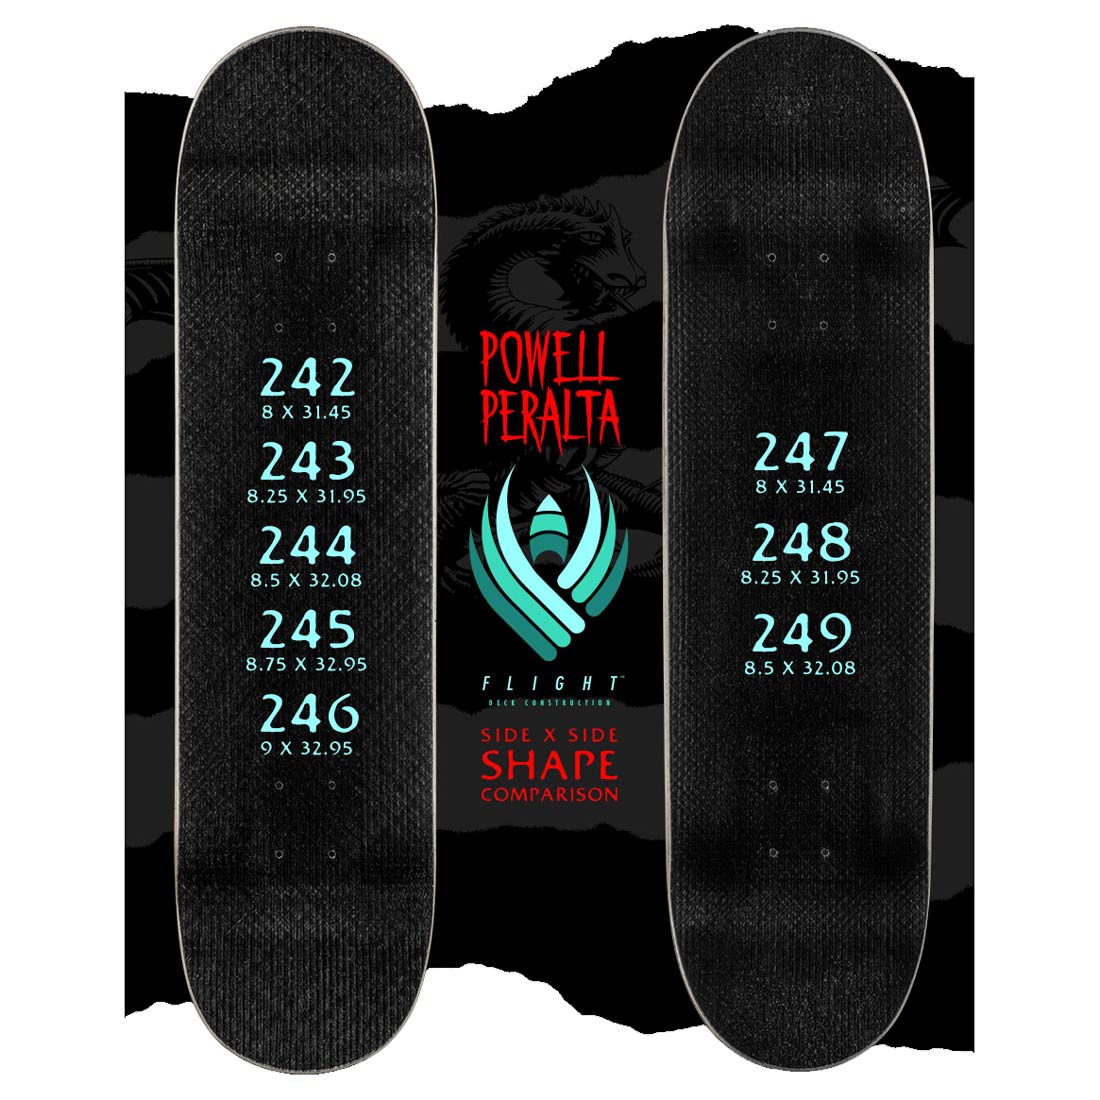 Powell-Peralta Skateboard Deck Biss Marion Moth Flight 8.25 x 31.95 